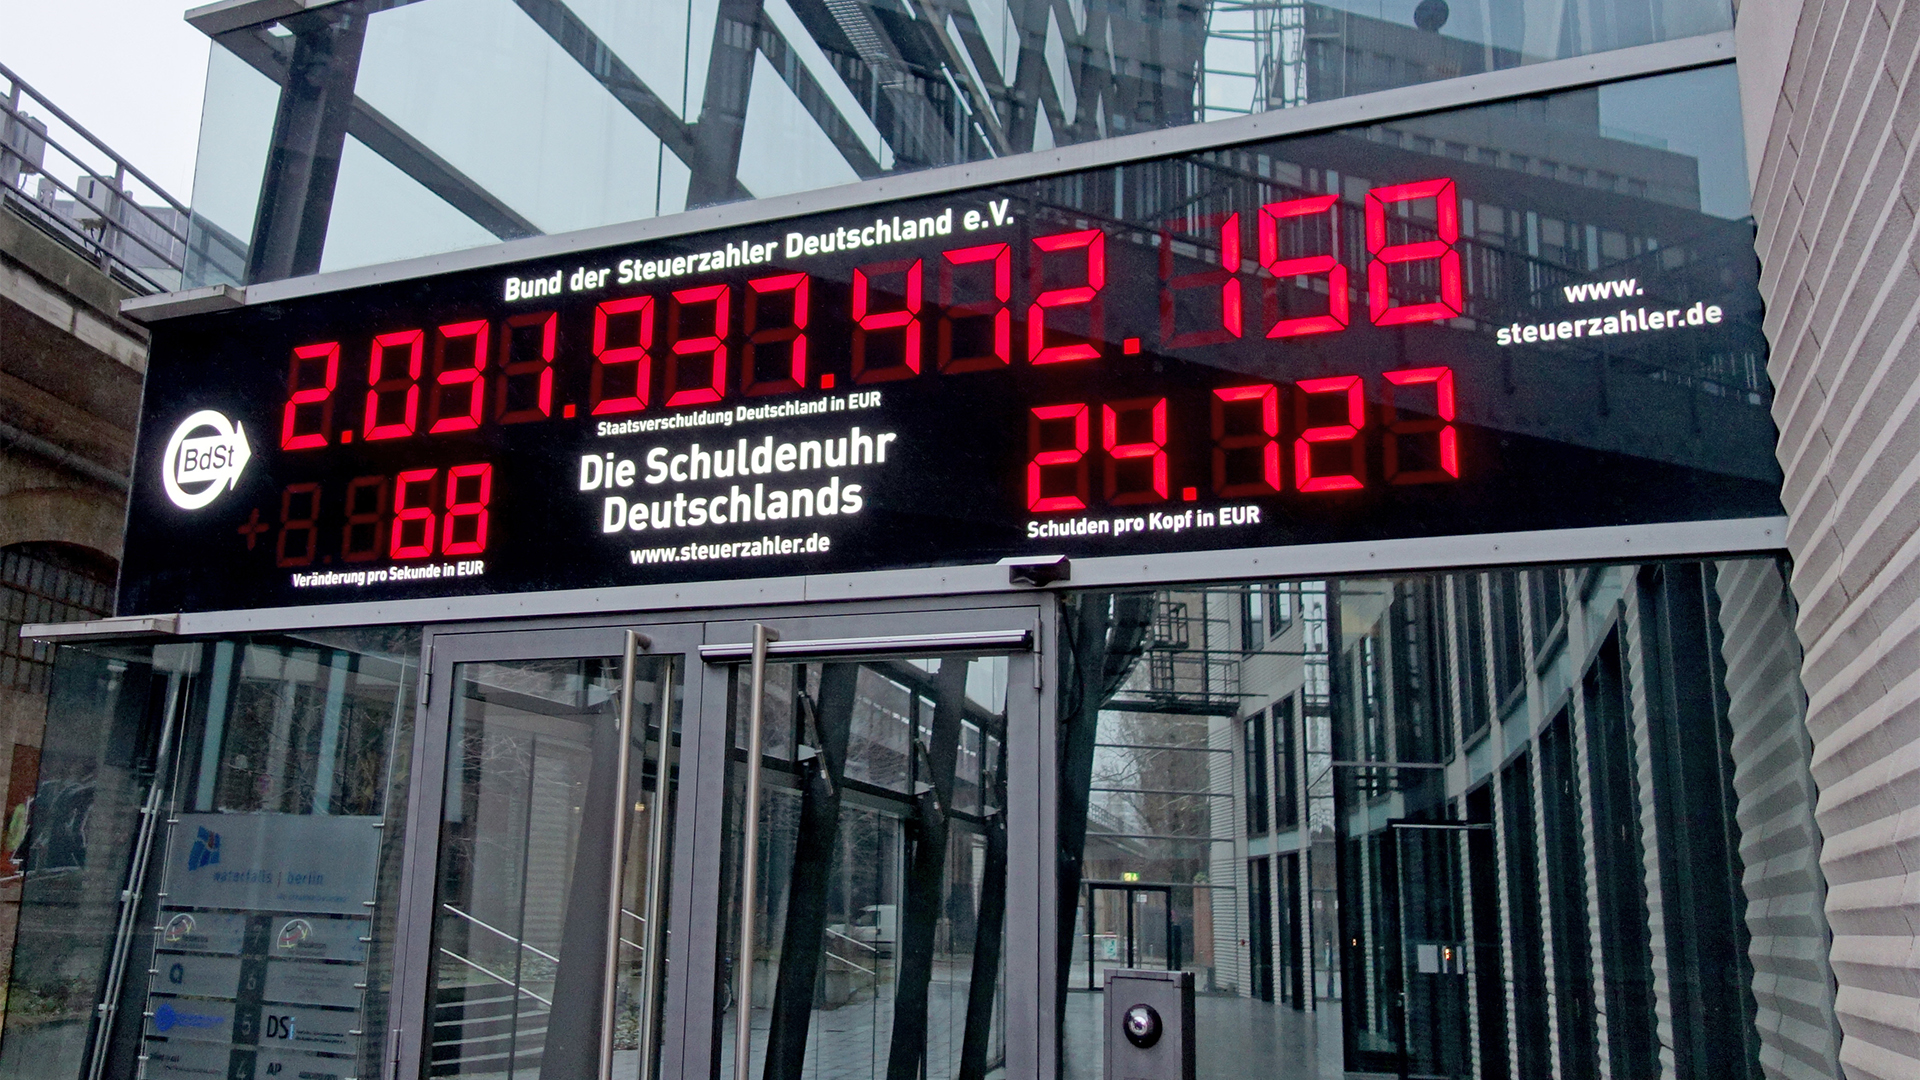 Das Foto zeigt die Schuldenuhr am neuen Standort des Bundes der Steuerzahler Deutschland in Berlin. 